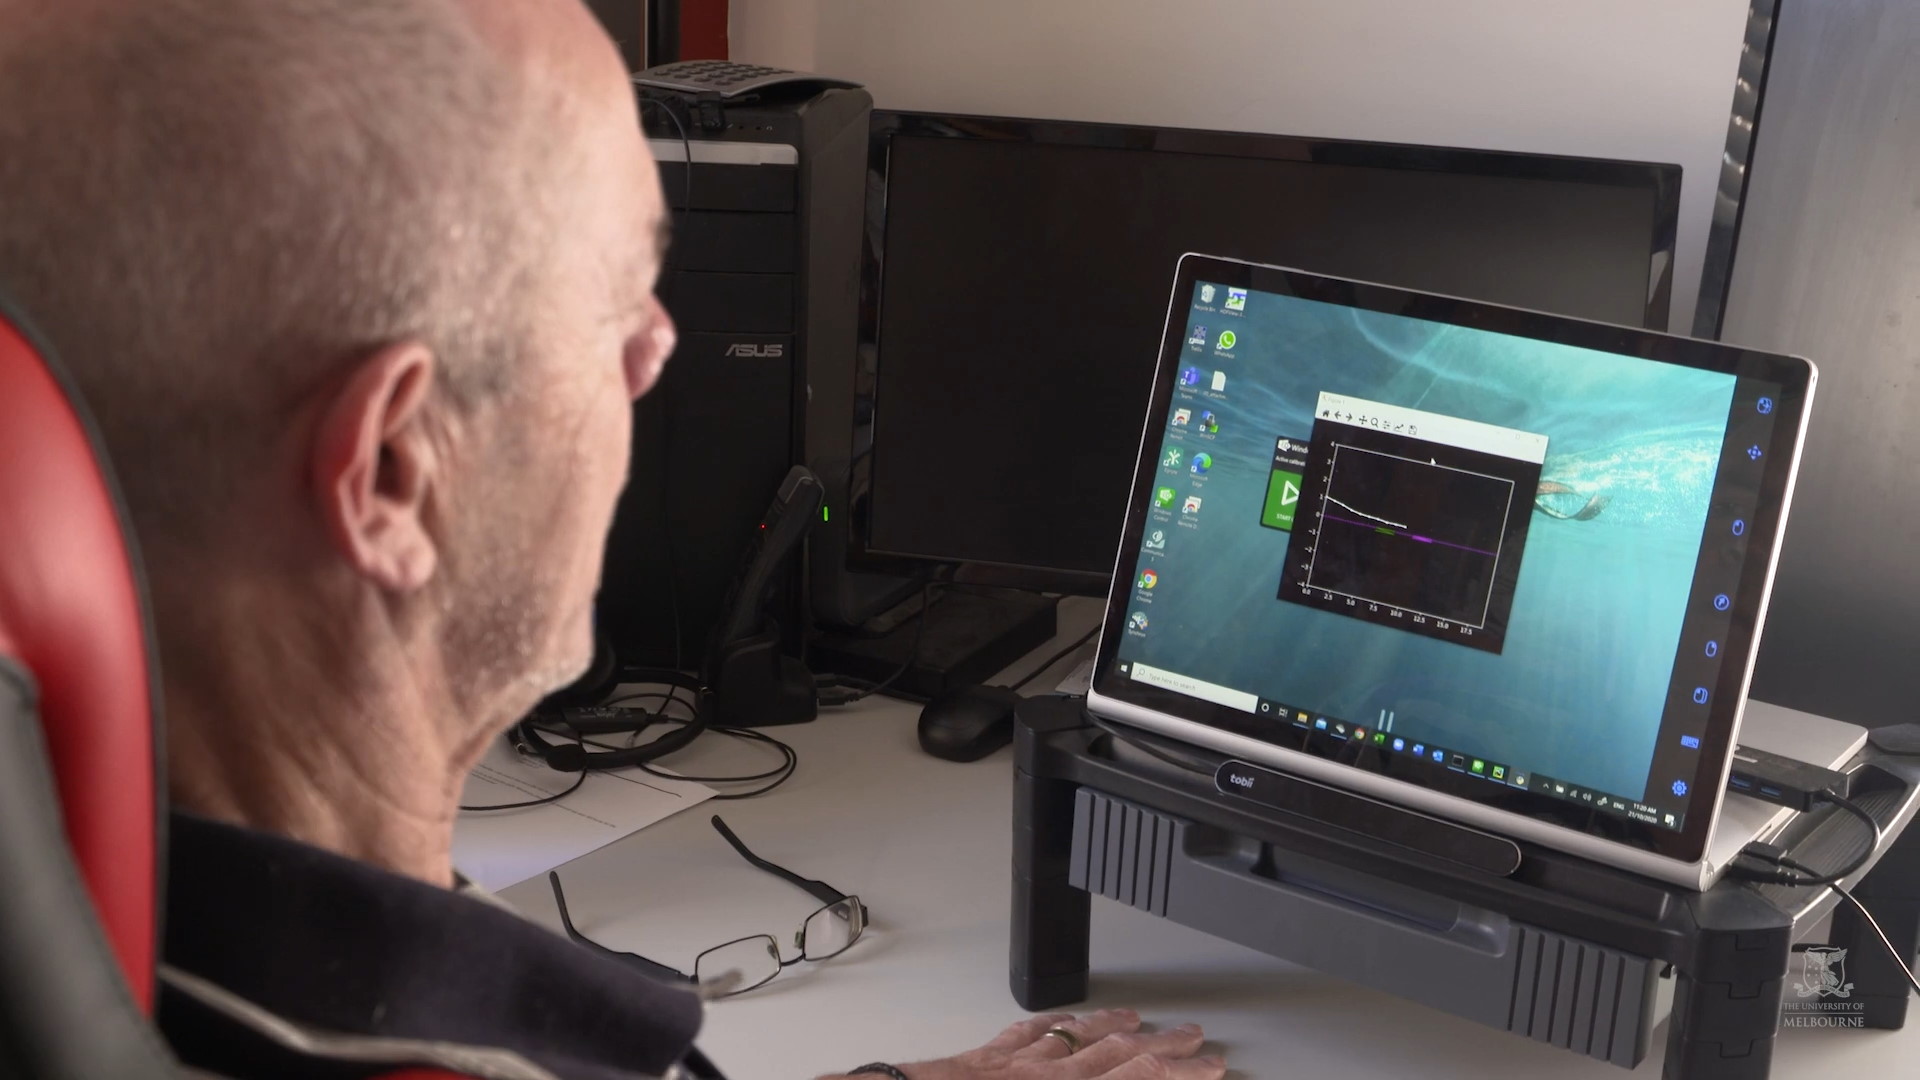 Grâce à l’implant cérébral Stentrode, cet homme parvient à contrôler un ordinateur par la pensée. © Université de Melbourne